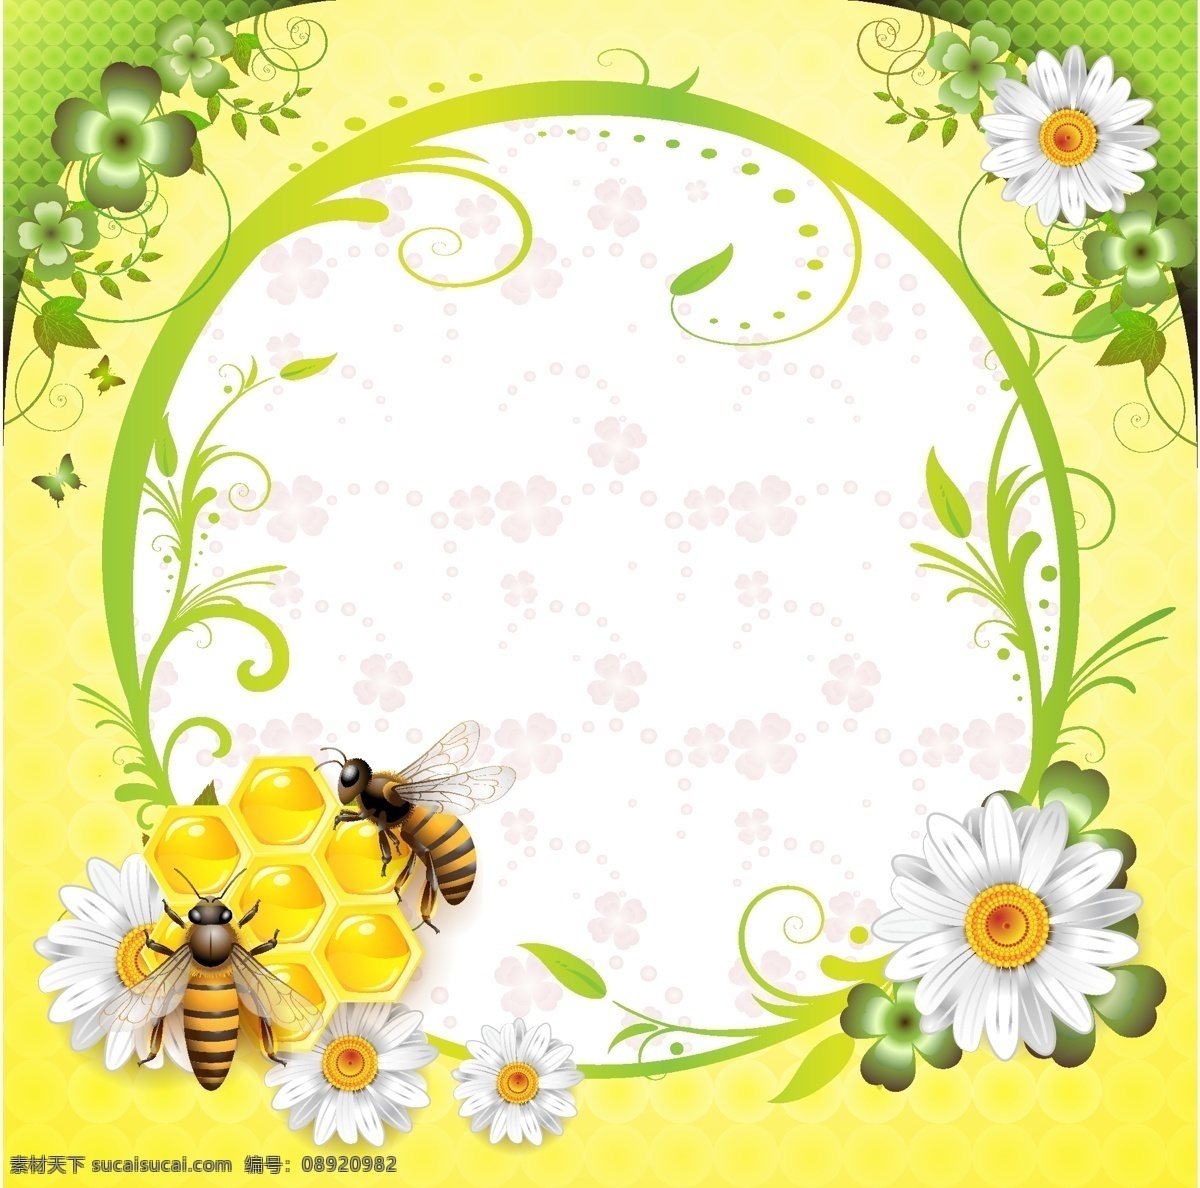 明亮 朝气 蜜蜂 采 蜜 画框 采蜜 菊花 彩色照片框 底纹边框 边框相框